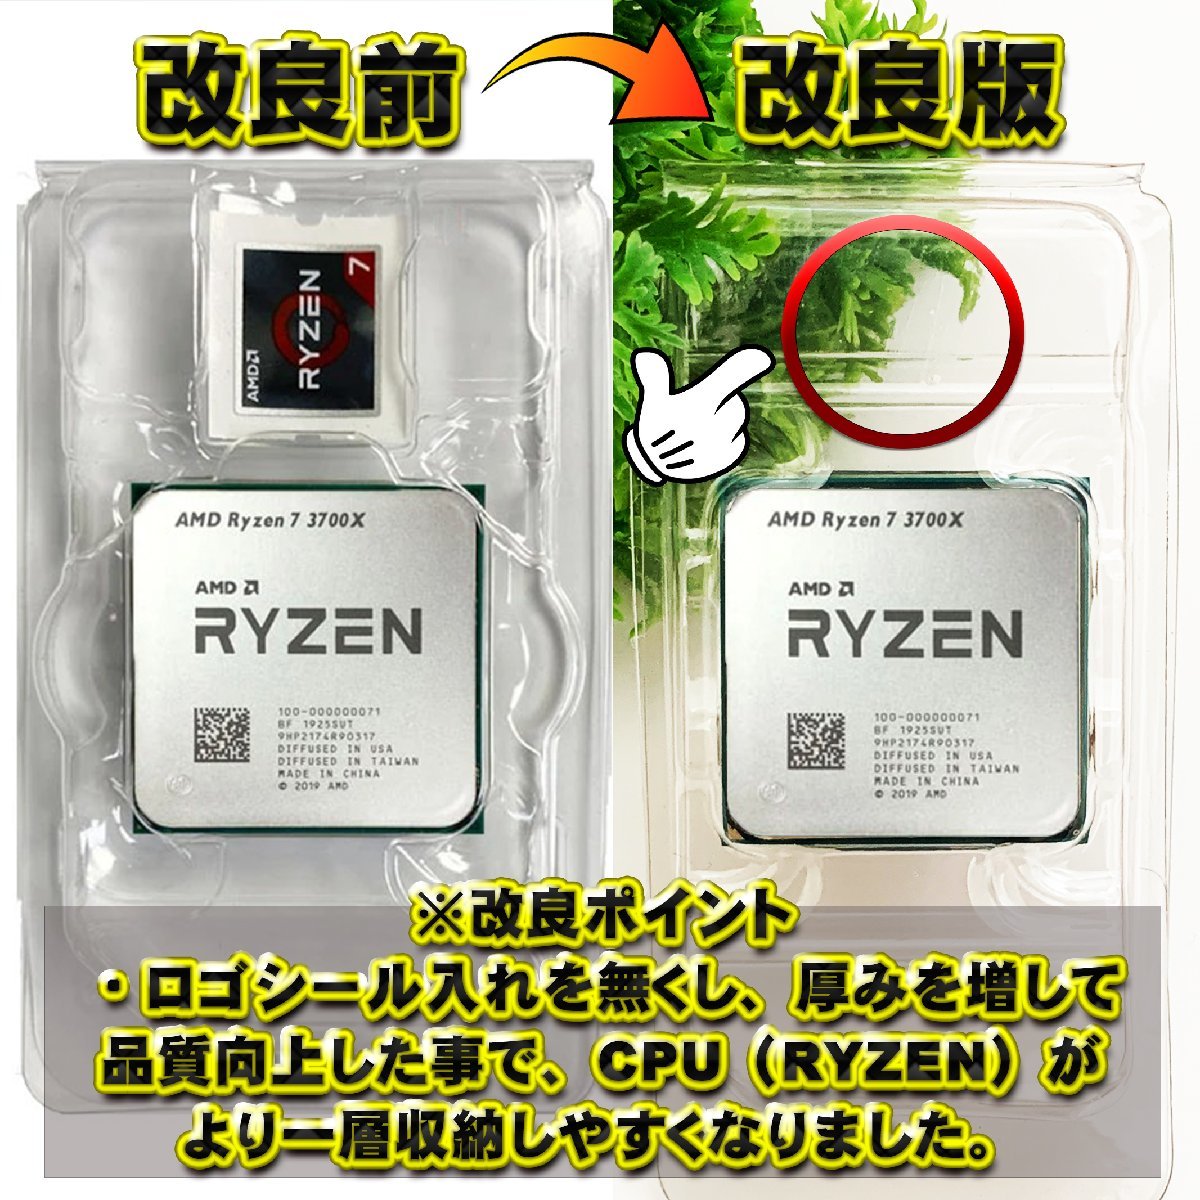 【改良版】【 AM2 対応 】CPU シェルケース AMD用 プラスチック【AM4のRYZENにも対応】 保管 収納ケース 10枚_画像4